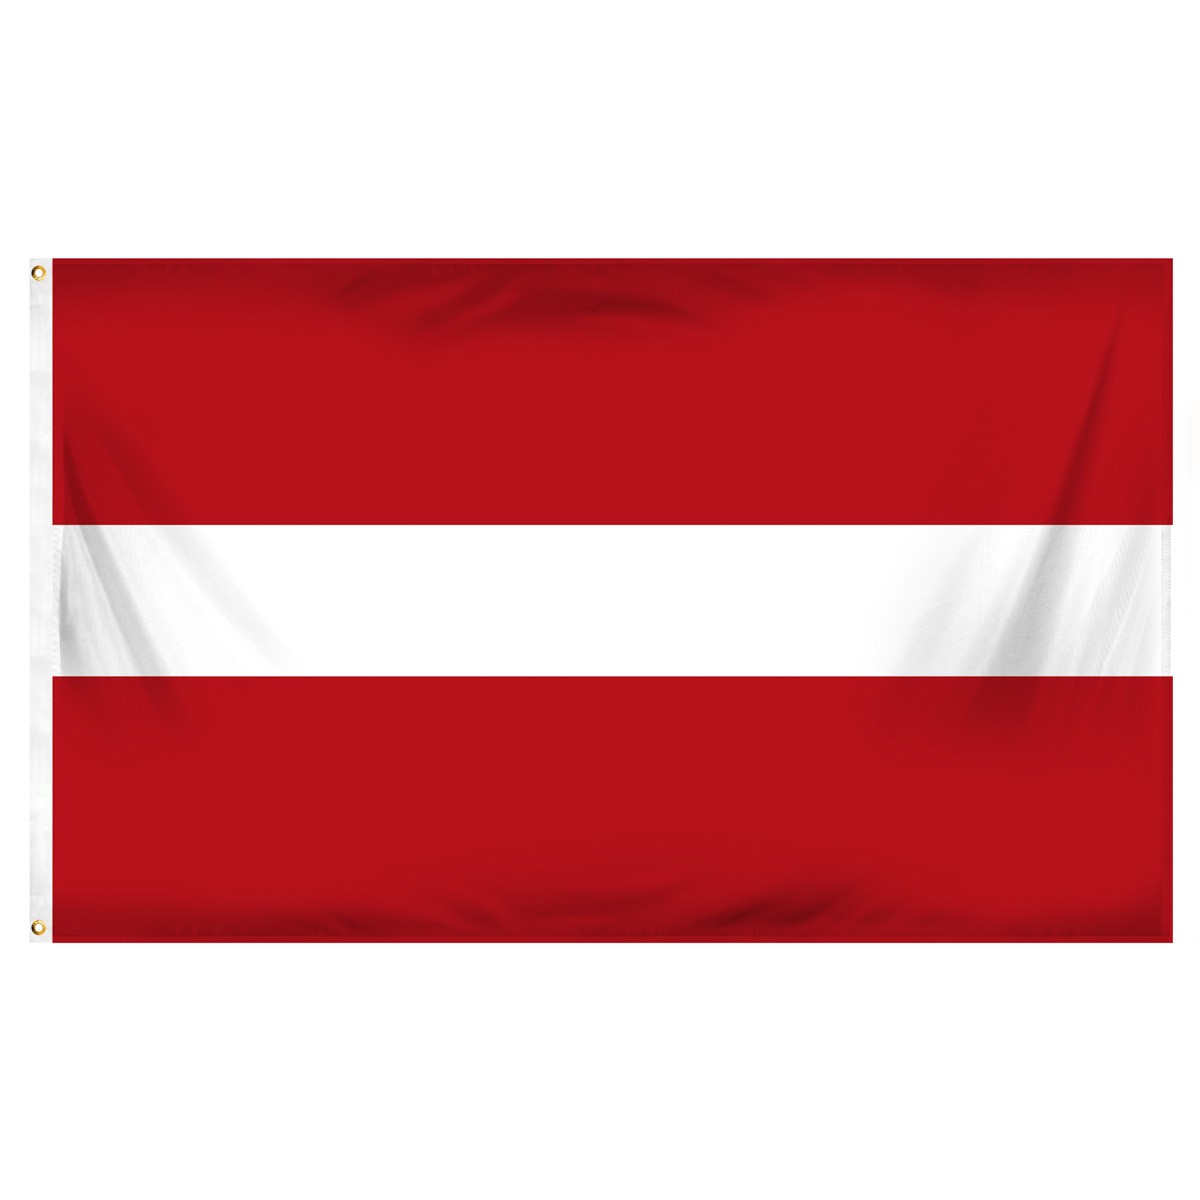 Latvia Executive Flags